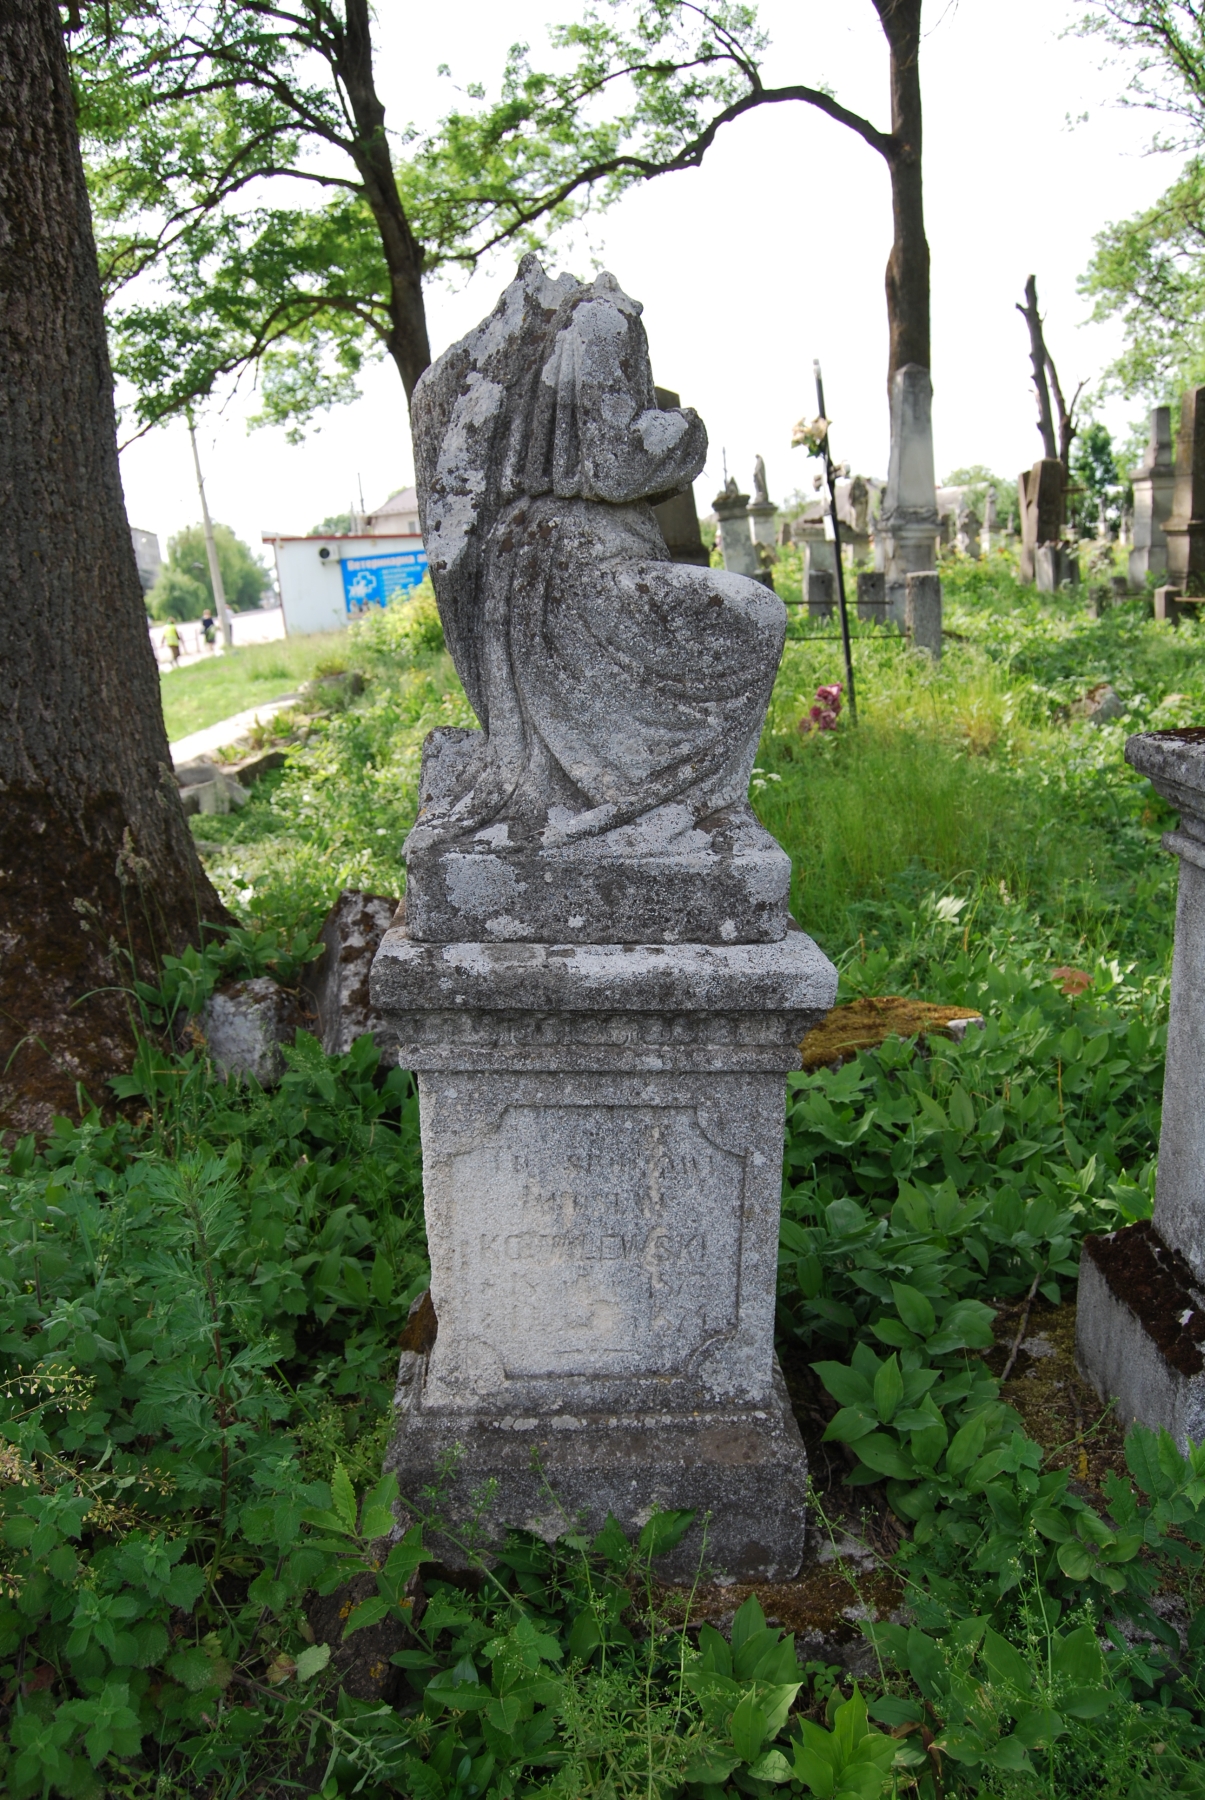 Tombstone of Justyn Kowalewski, Zbarazh cemetery, as of 2018